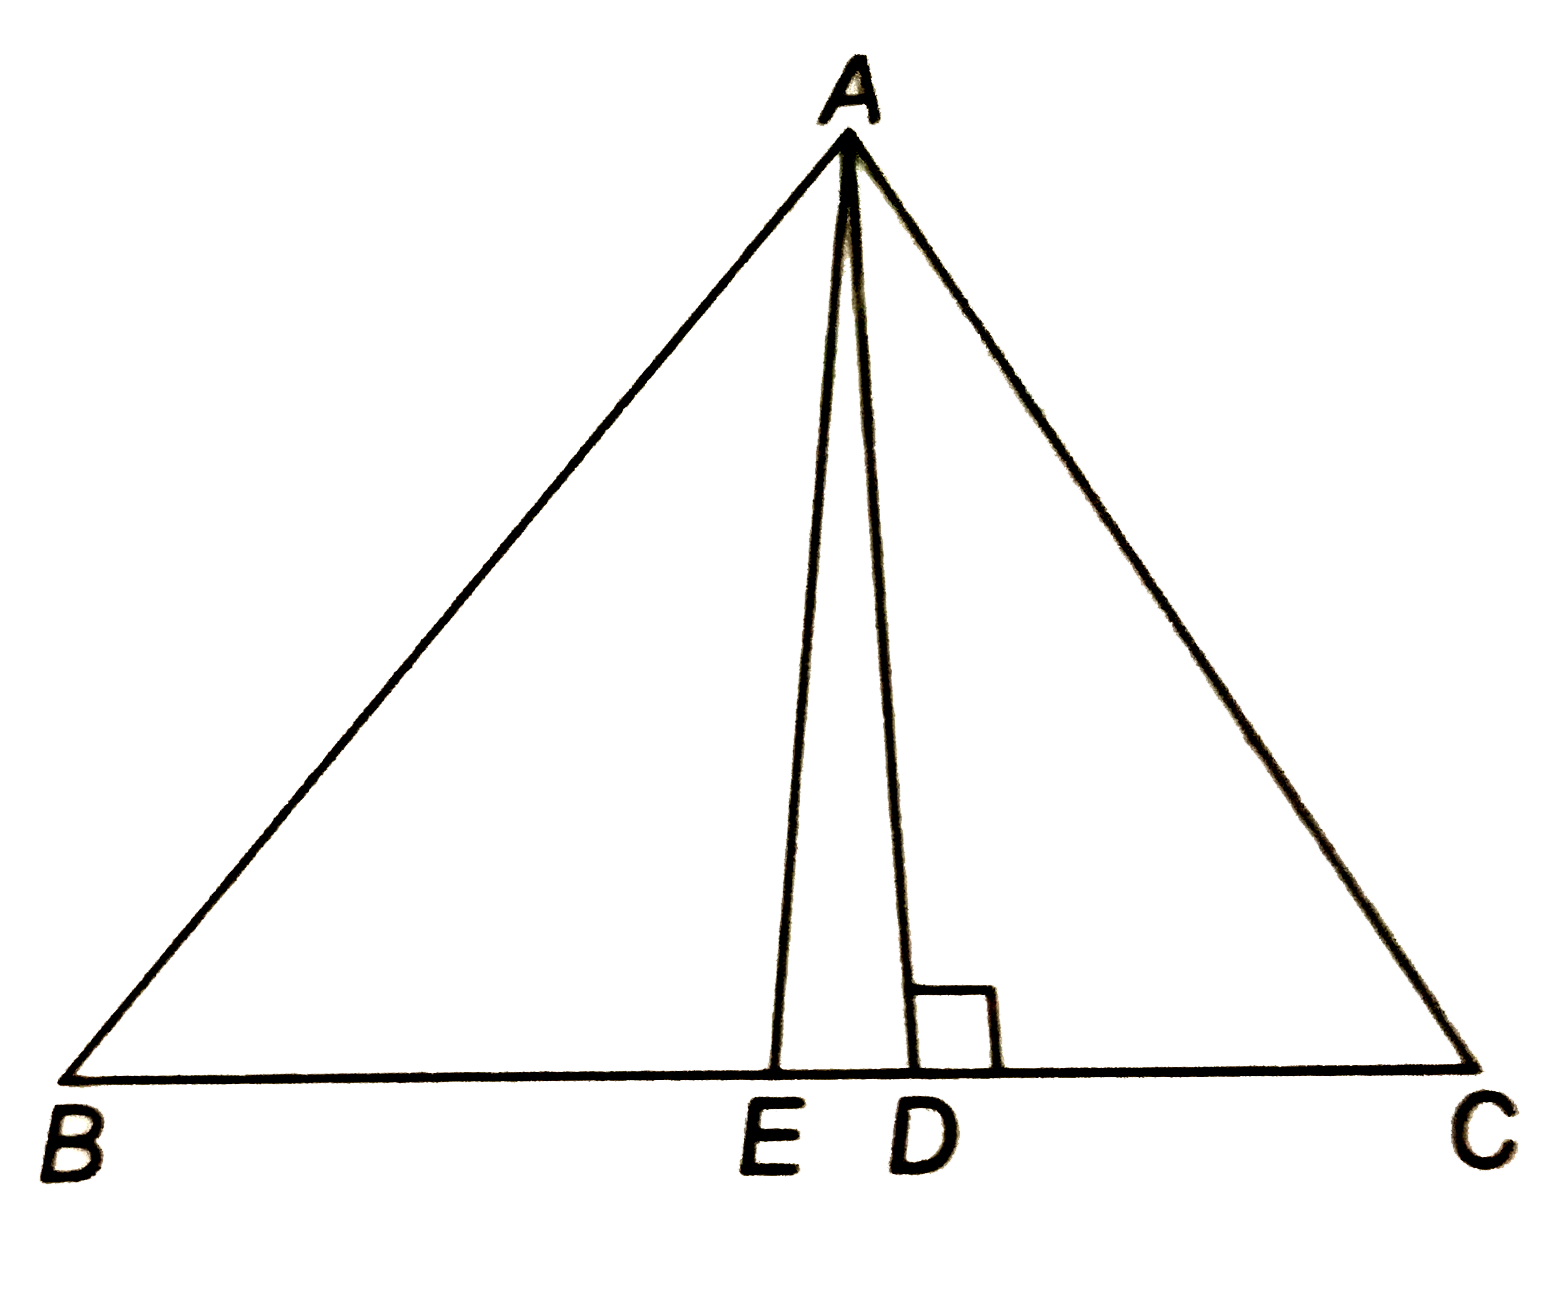 दिए चित्र में एक त्रिभुज ABC  है जिसमे ABgtAC है BC  का मध्य बिन्दु E तथा  BC पर लम्ब AD है सिद्ध कीजिये कि  AB^2
 +AC^2
 =2AE^2
 +2BE^2